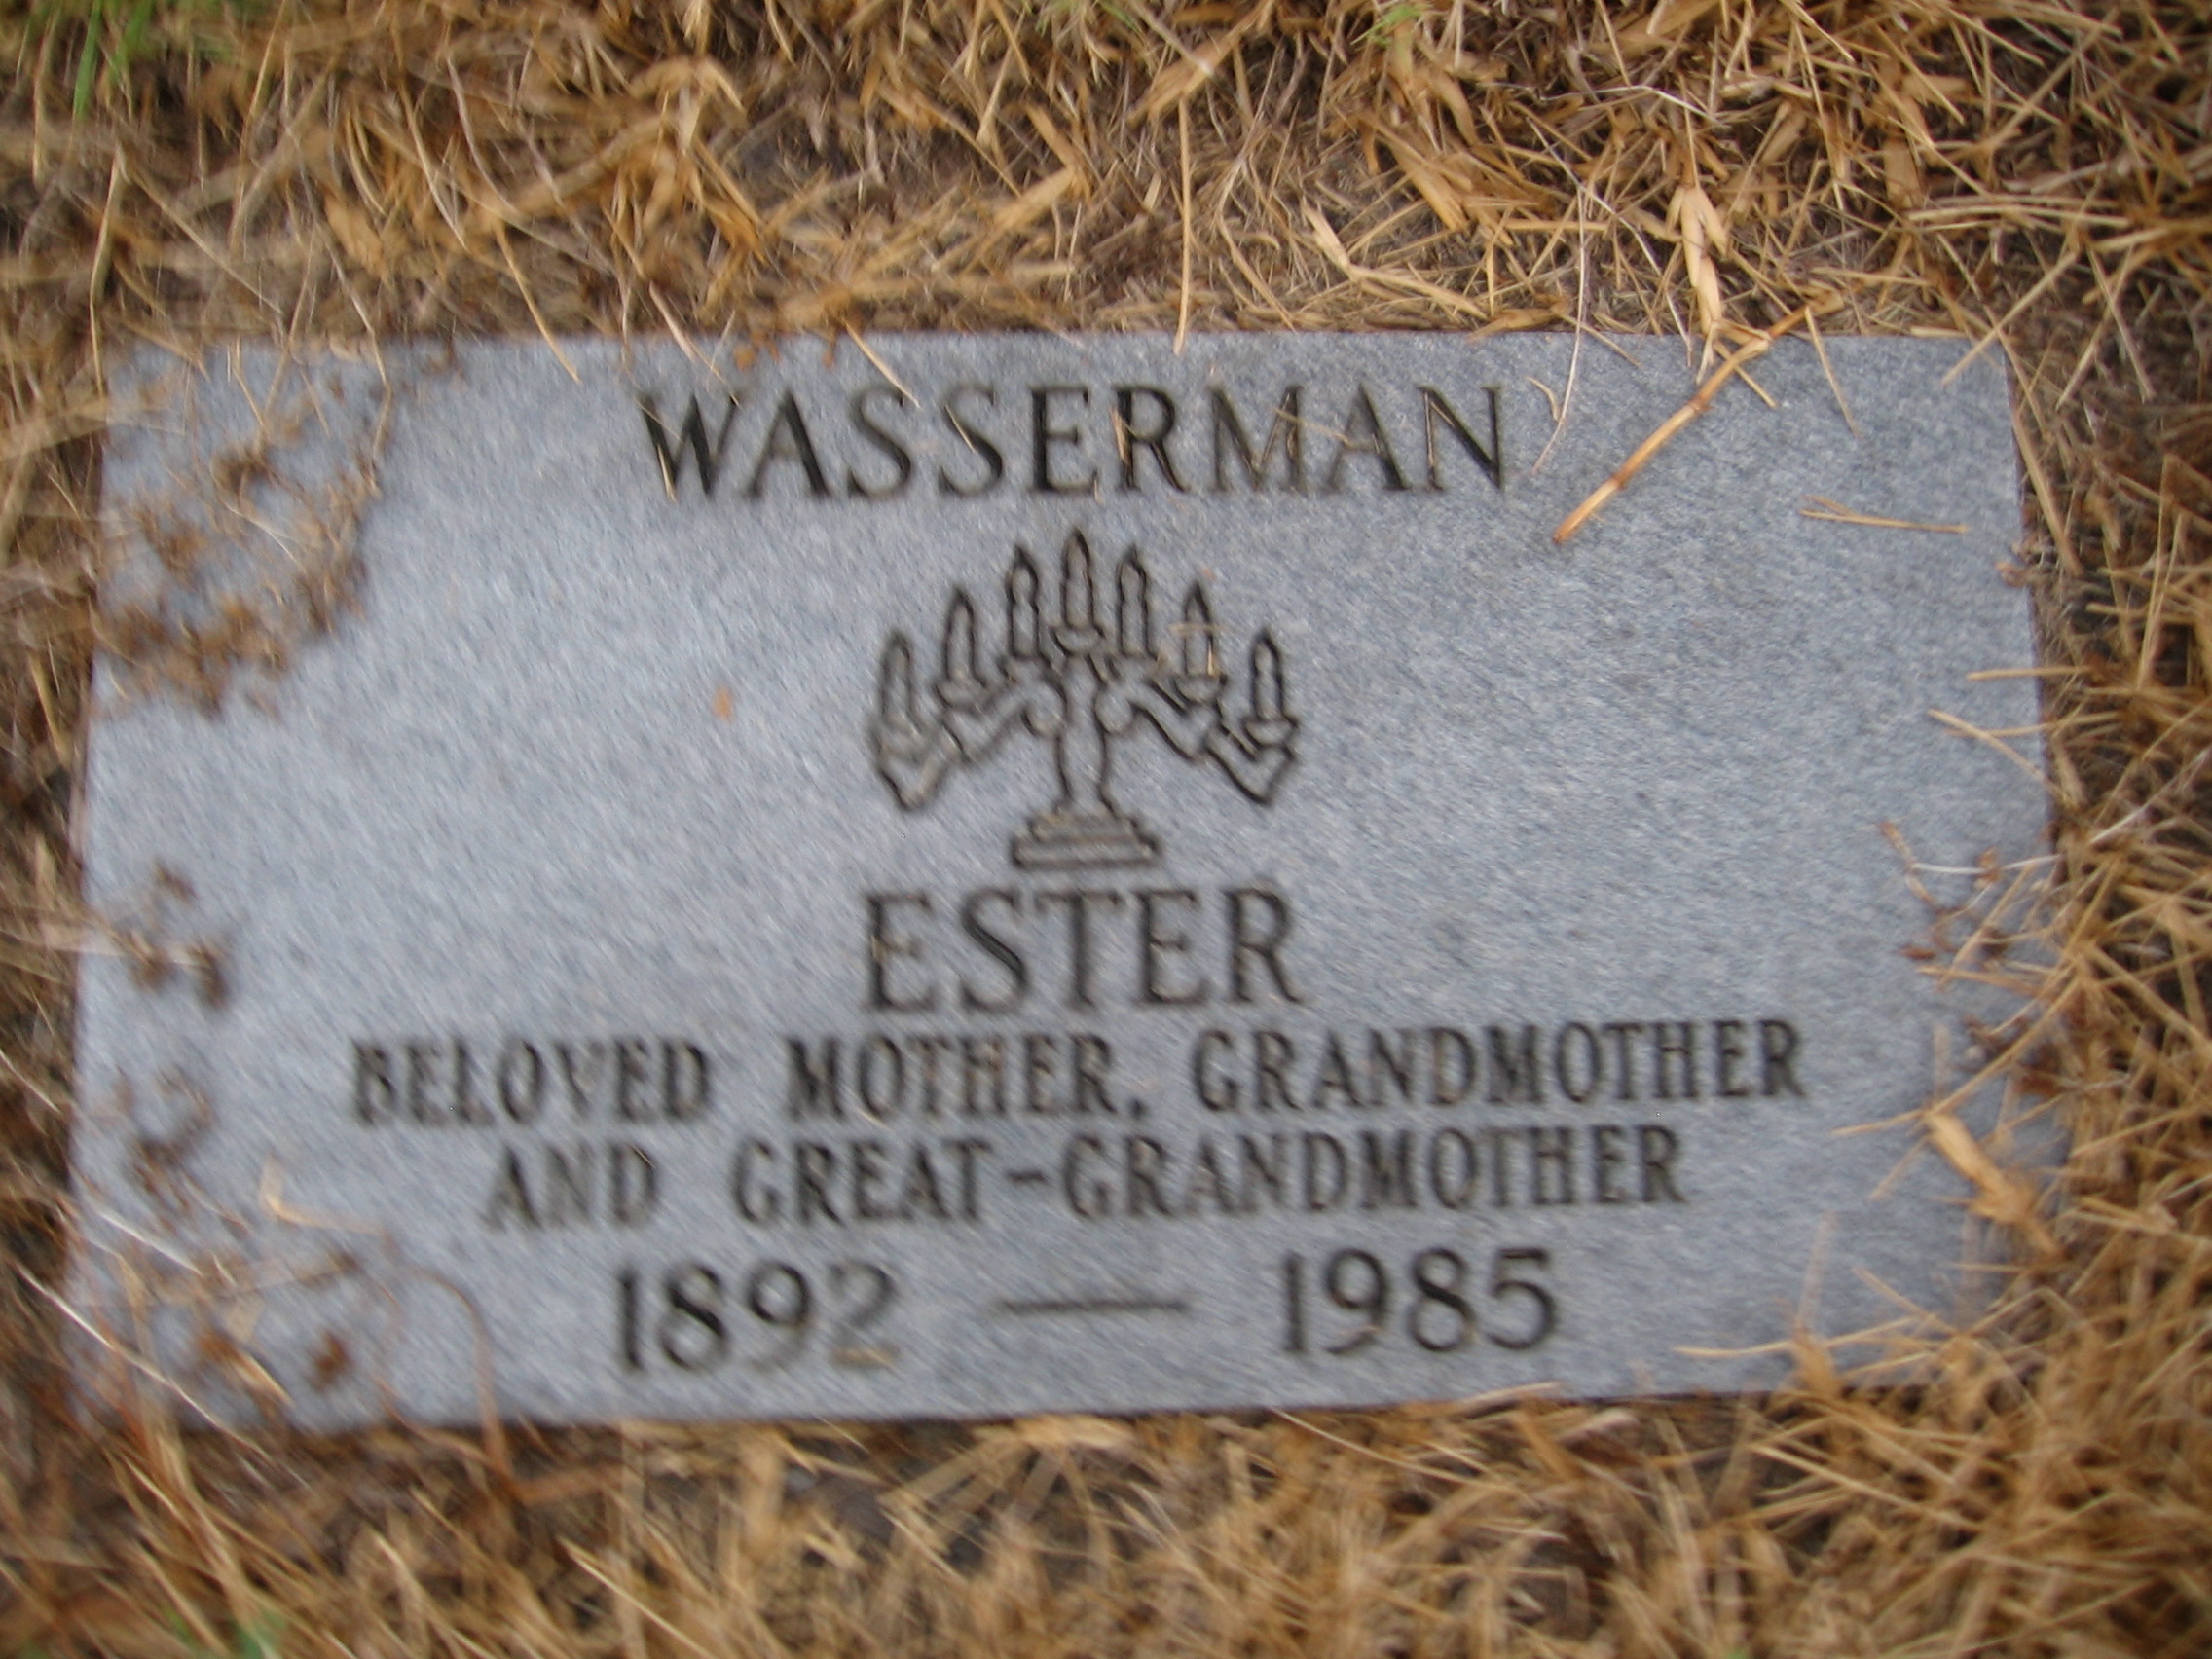 Ester Wasserman